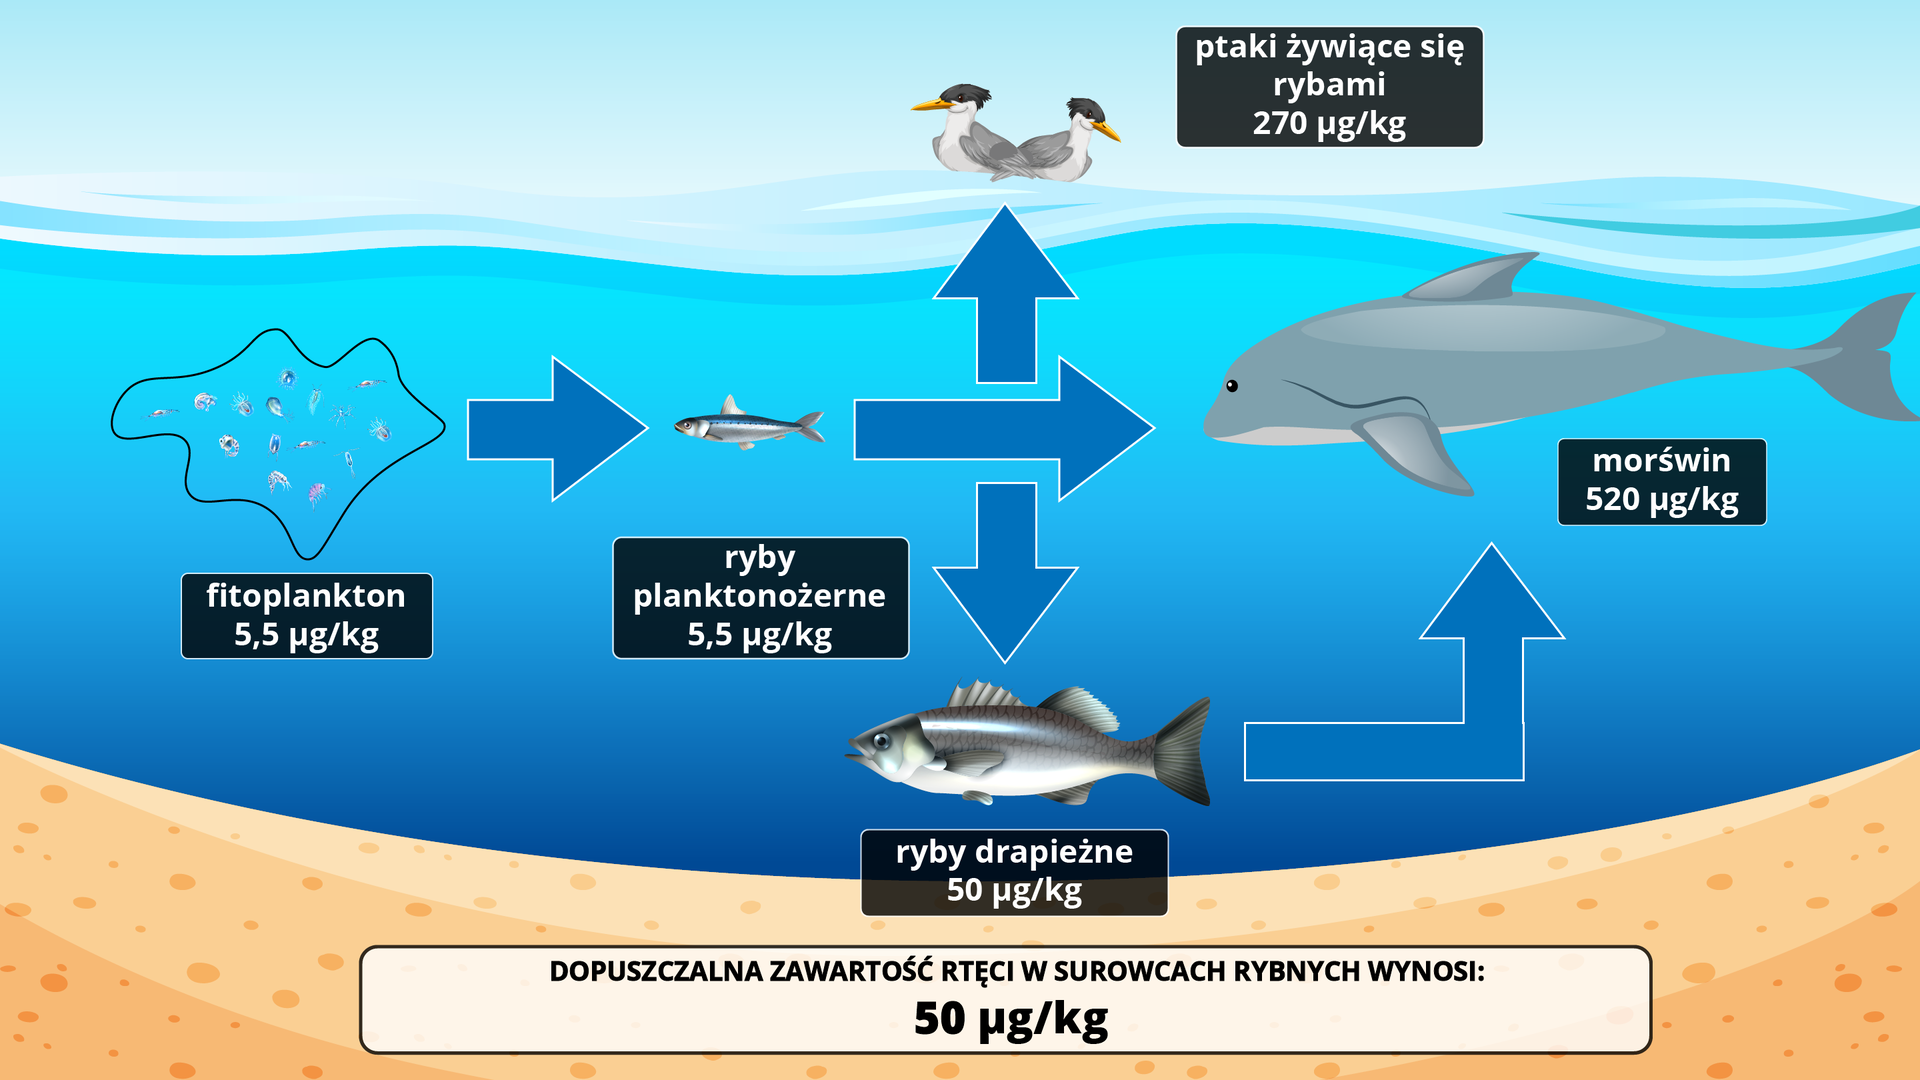 Na ilustracji przedstawiającej wodę z pływającymi w niej organizmami oraz z ptakami unoszącymi się na powierzchni wody opisano dopuszczalną zawartość rtęci w surowcach rybnych. Wynosi ona 50 miligramów na kilogram. Tymczasem morświn ma 520 mikrogramów na kilogram, ryby drapieżne 50 mikrogramów na kilogram, ryby planktonożerne 5,5 mikrogramów na kilogram, fitoplankton 5,5 mikrogramów na kilogram, ptaki żywiące się rybami 270 mikrogramów na kilogram.    